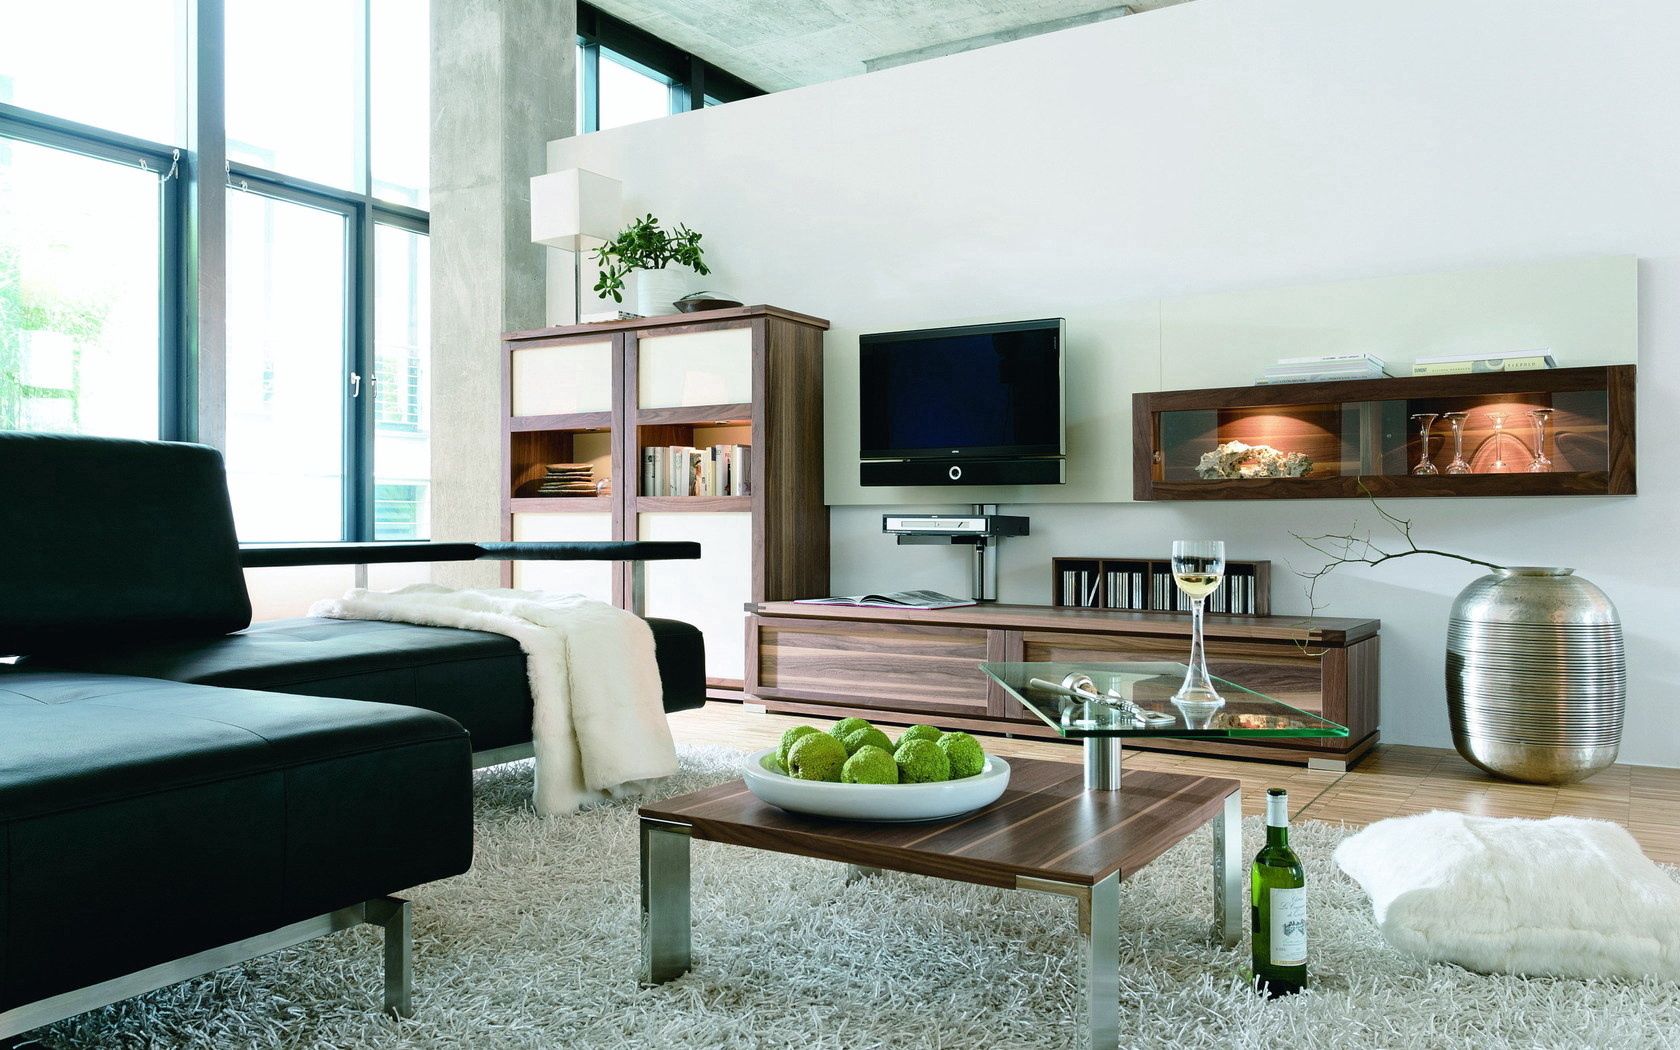 interior, miscellanea, miscellaneous, furniture, coziness, comfort, living room, carpet